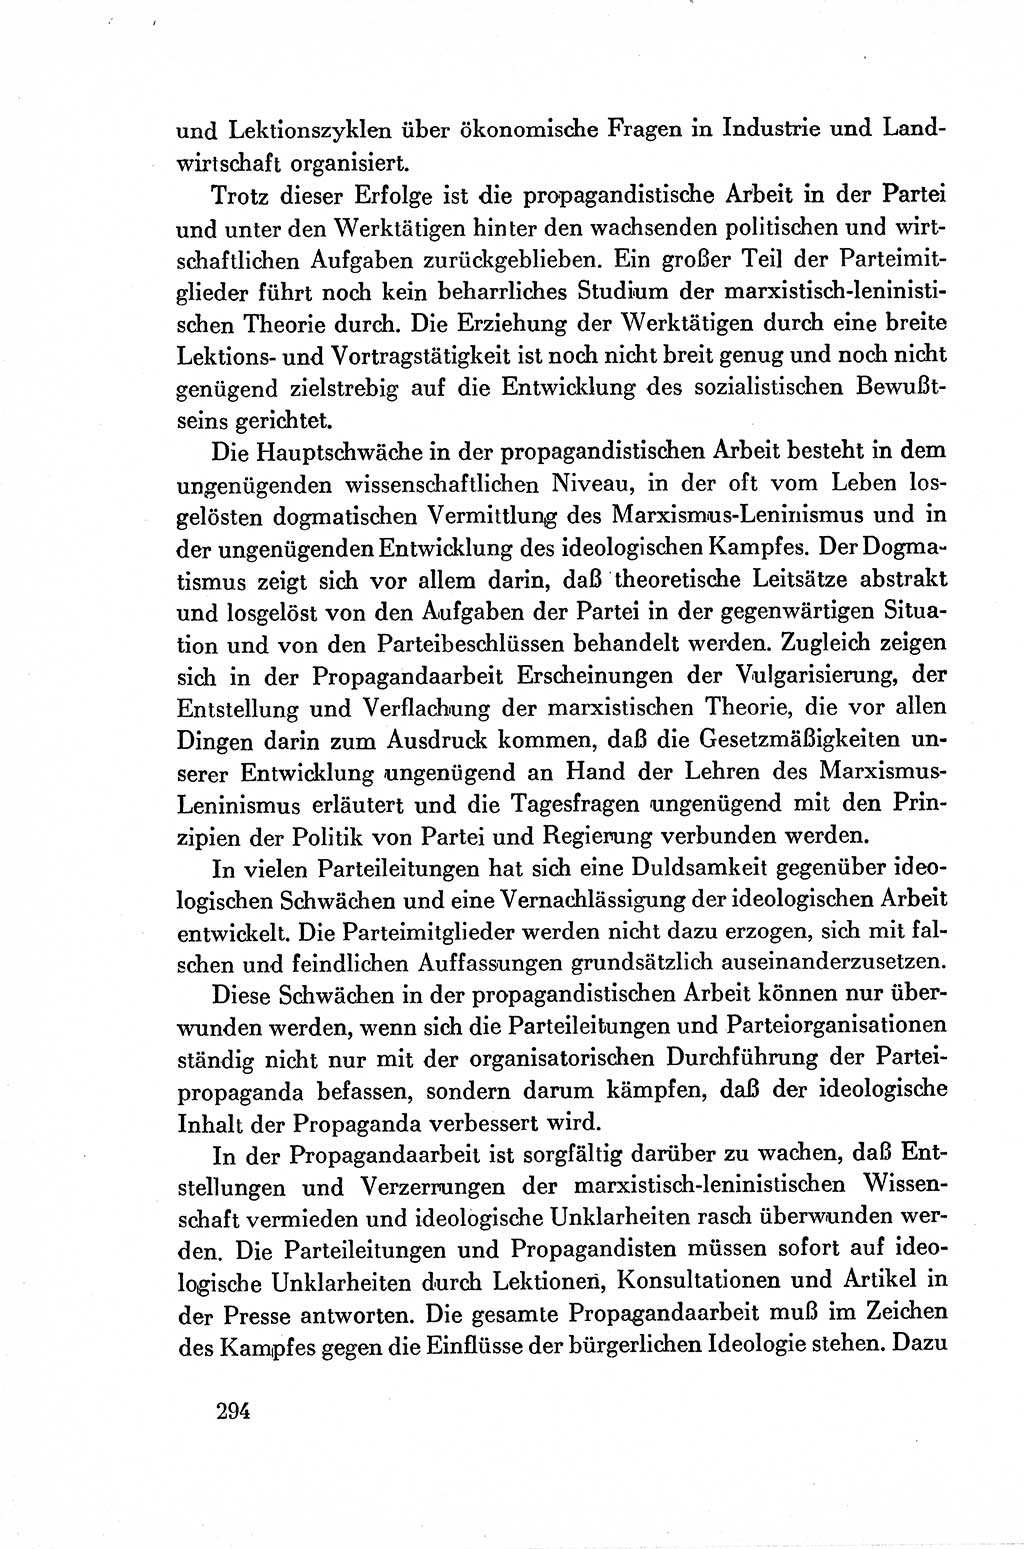 Dokumente der Sozialistischen Einheitspartei Deutschlands (SED) [Deutsche Demokratische Republik (DDR)] 1954-1955, Seite 294 (Dok. SED DDR 1954-1955, S. 294)